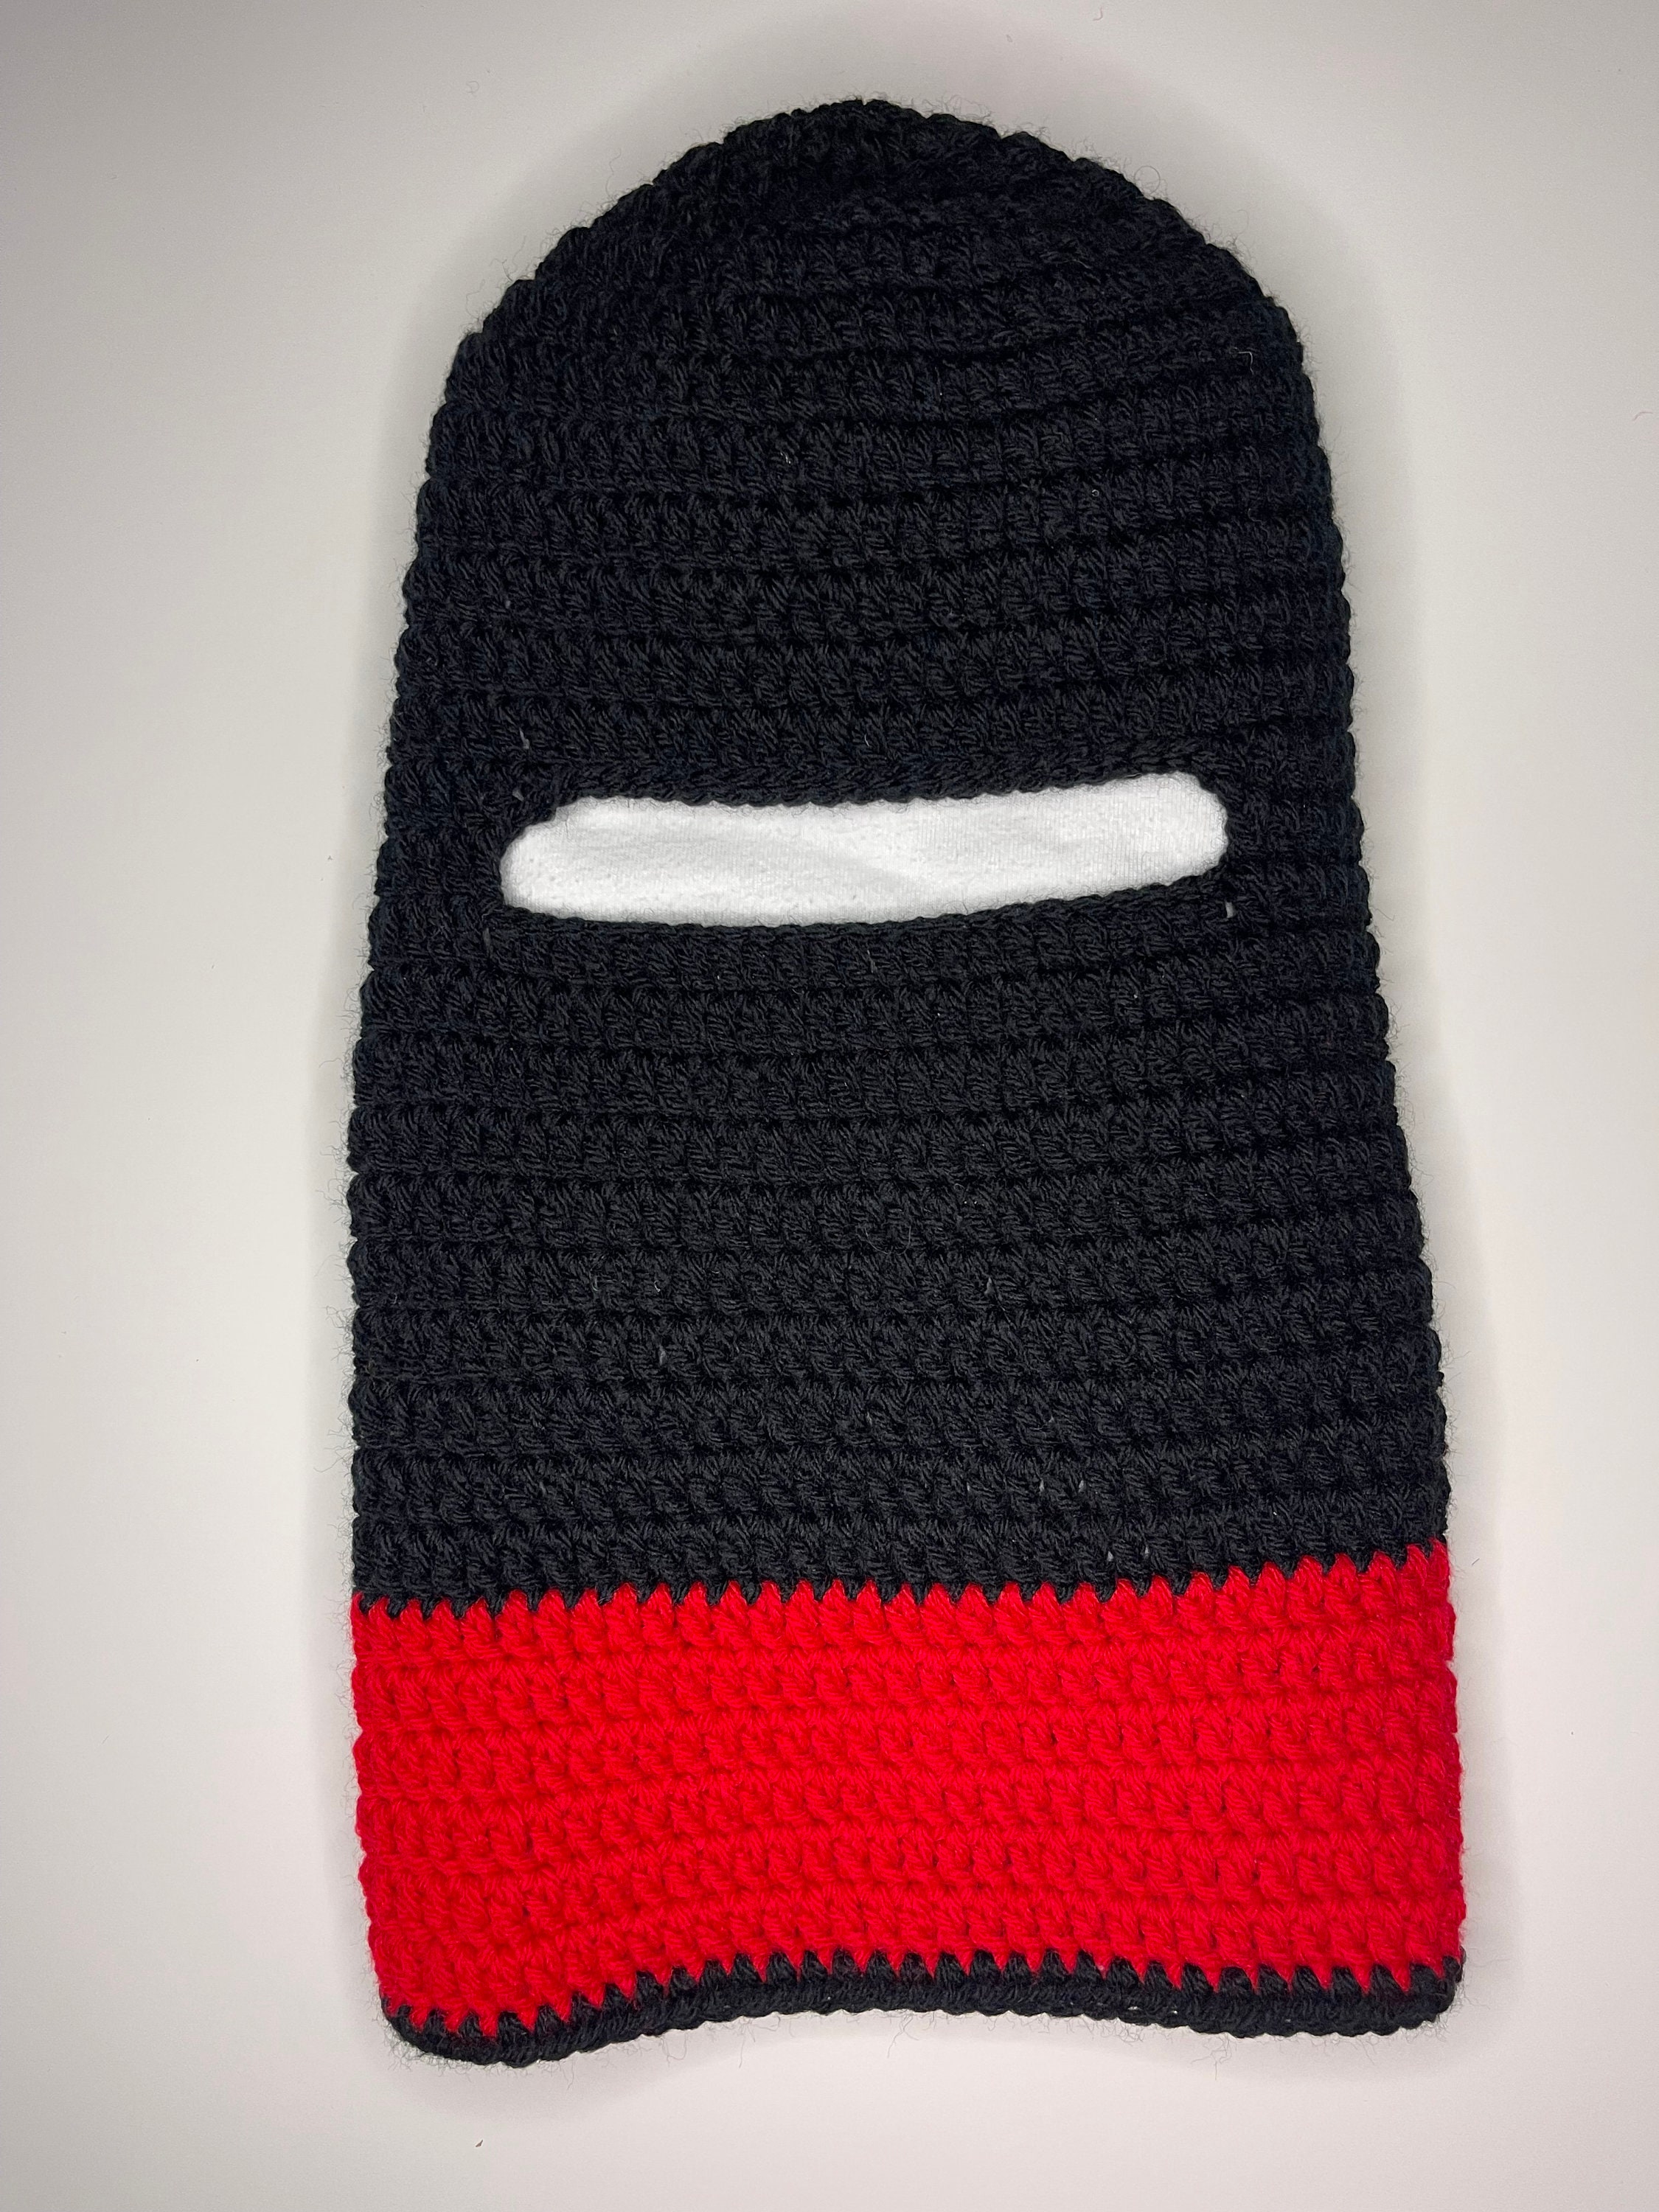 Crochet Ski Mask - Etsy